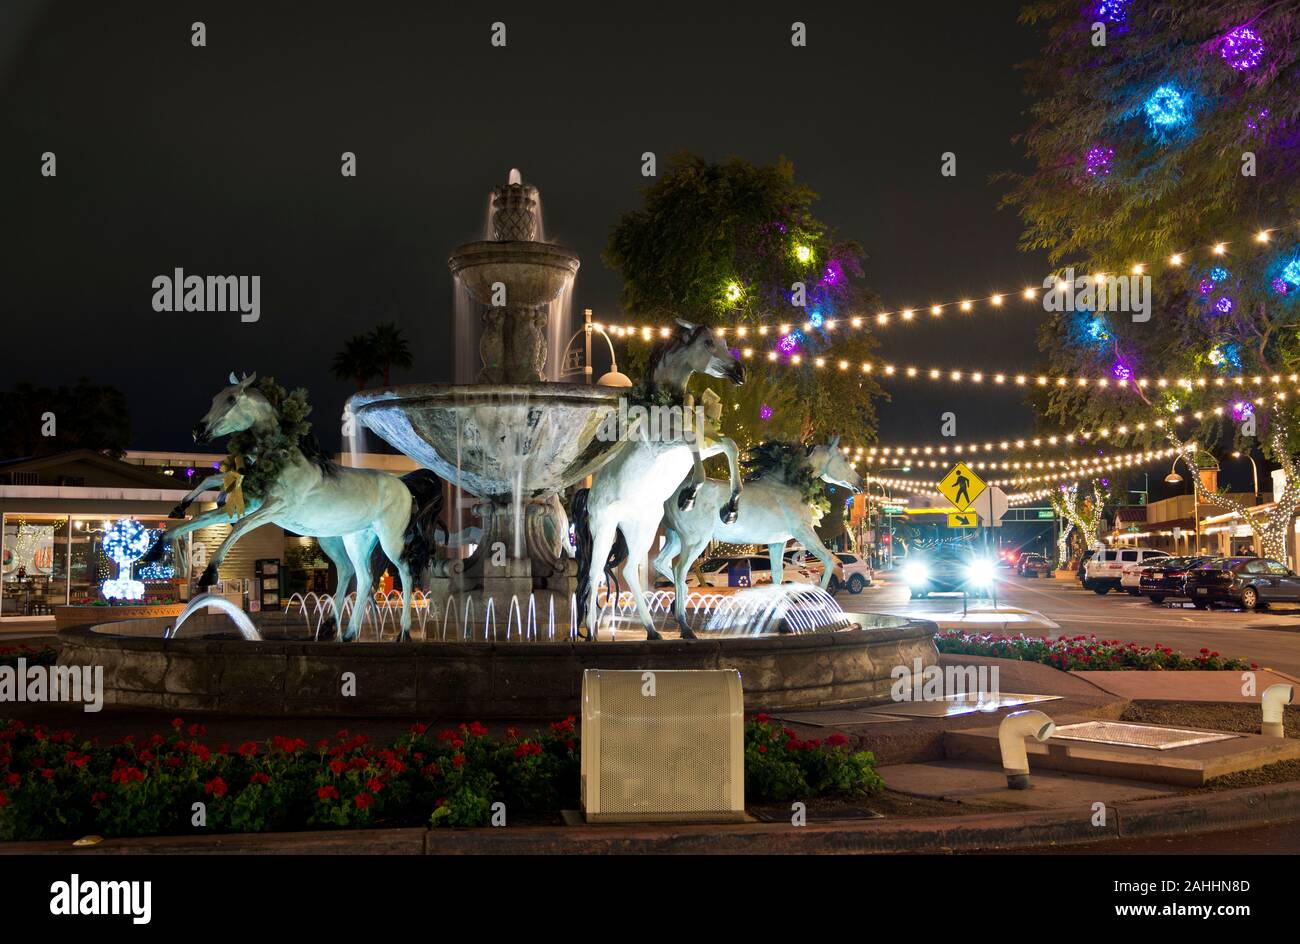 Scottsdale Arizona. Cavallo di bronzo Fontana in Scottsdale, Arizona, Stati Uniti d'America di notte. Luci e decorazioni natalizie in Scottsdale, AZ, la zona della città vecchia. Foto Stock